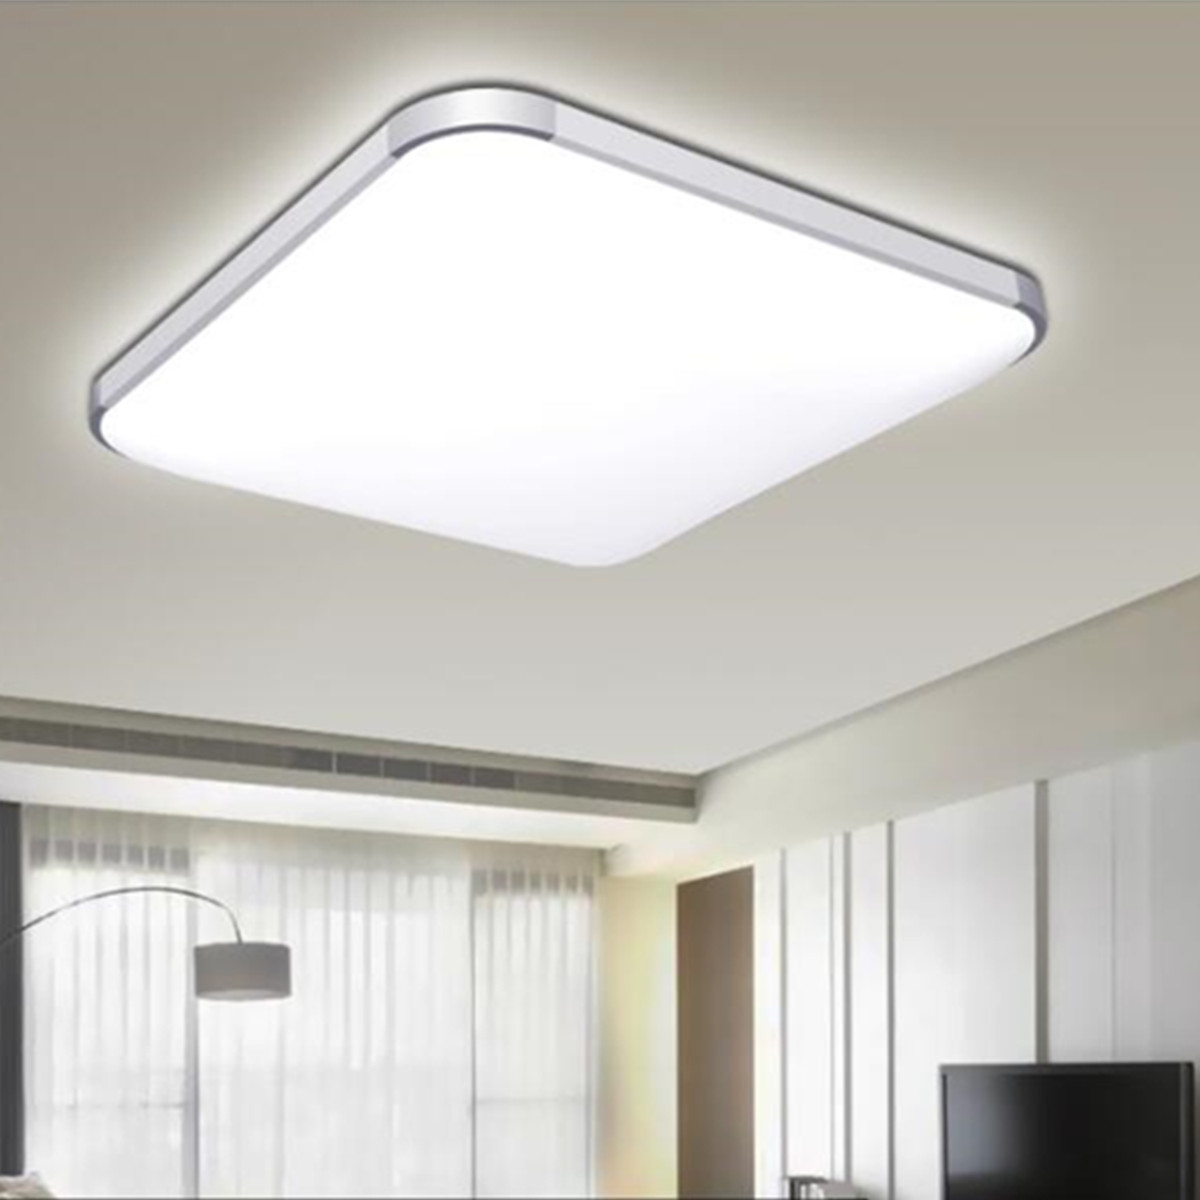 

24 Вт LED Современный Потолочный Светильник Спальня Лампа Домашний Светильник С Дистанционный